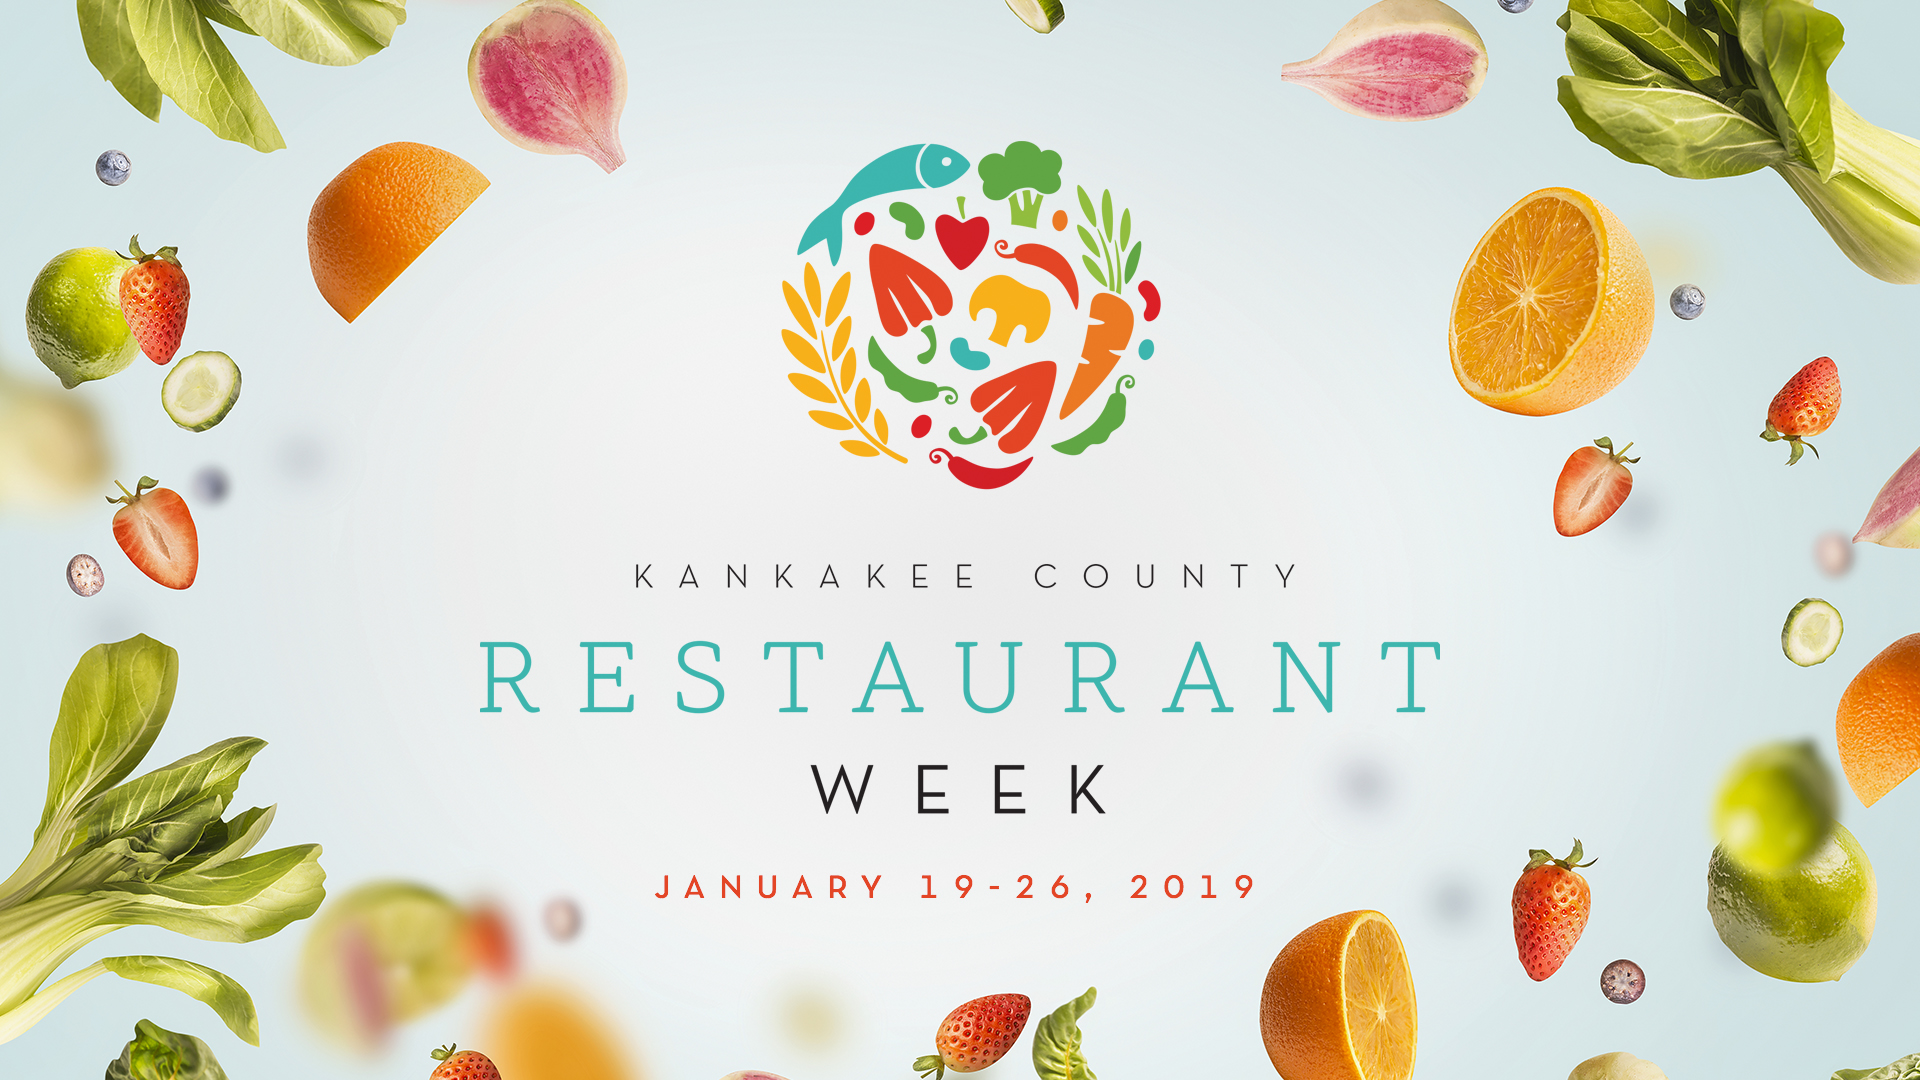 Kankakee County Restaurant Week 2019